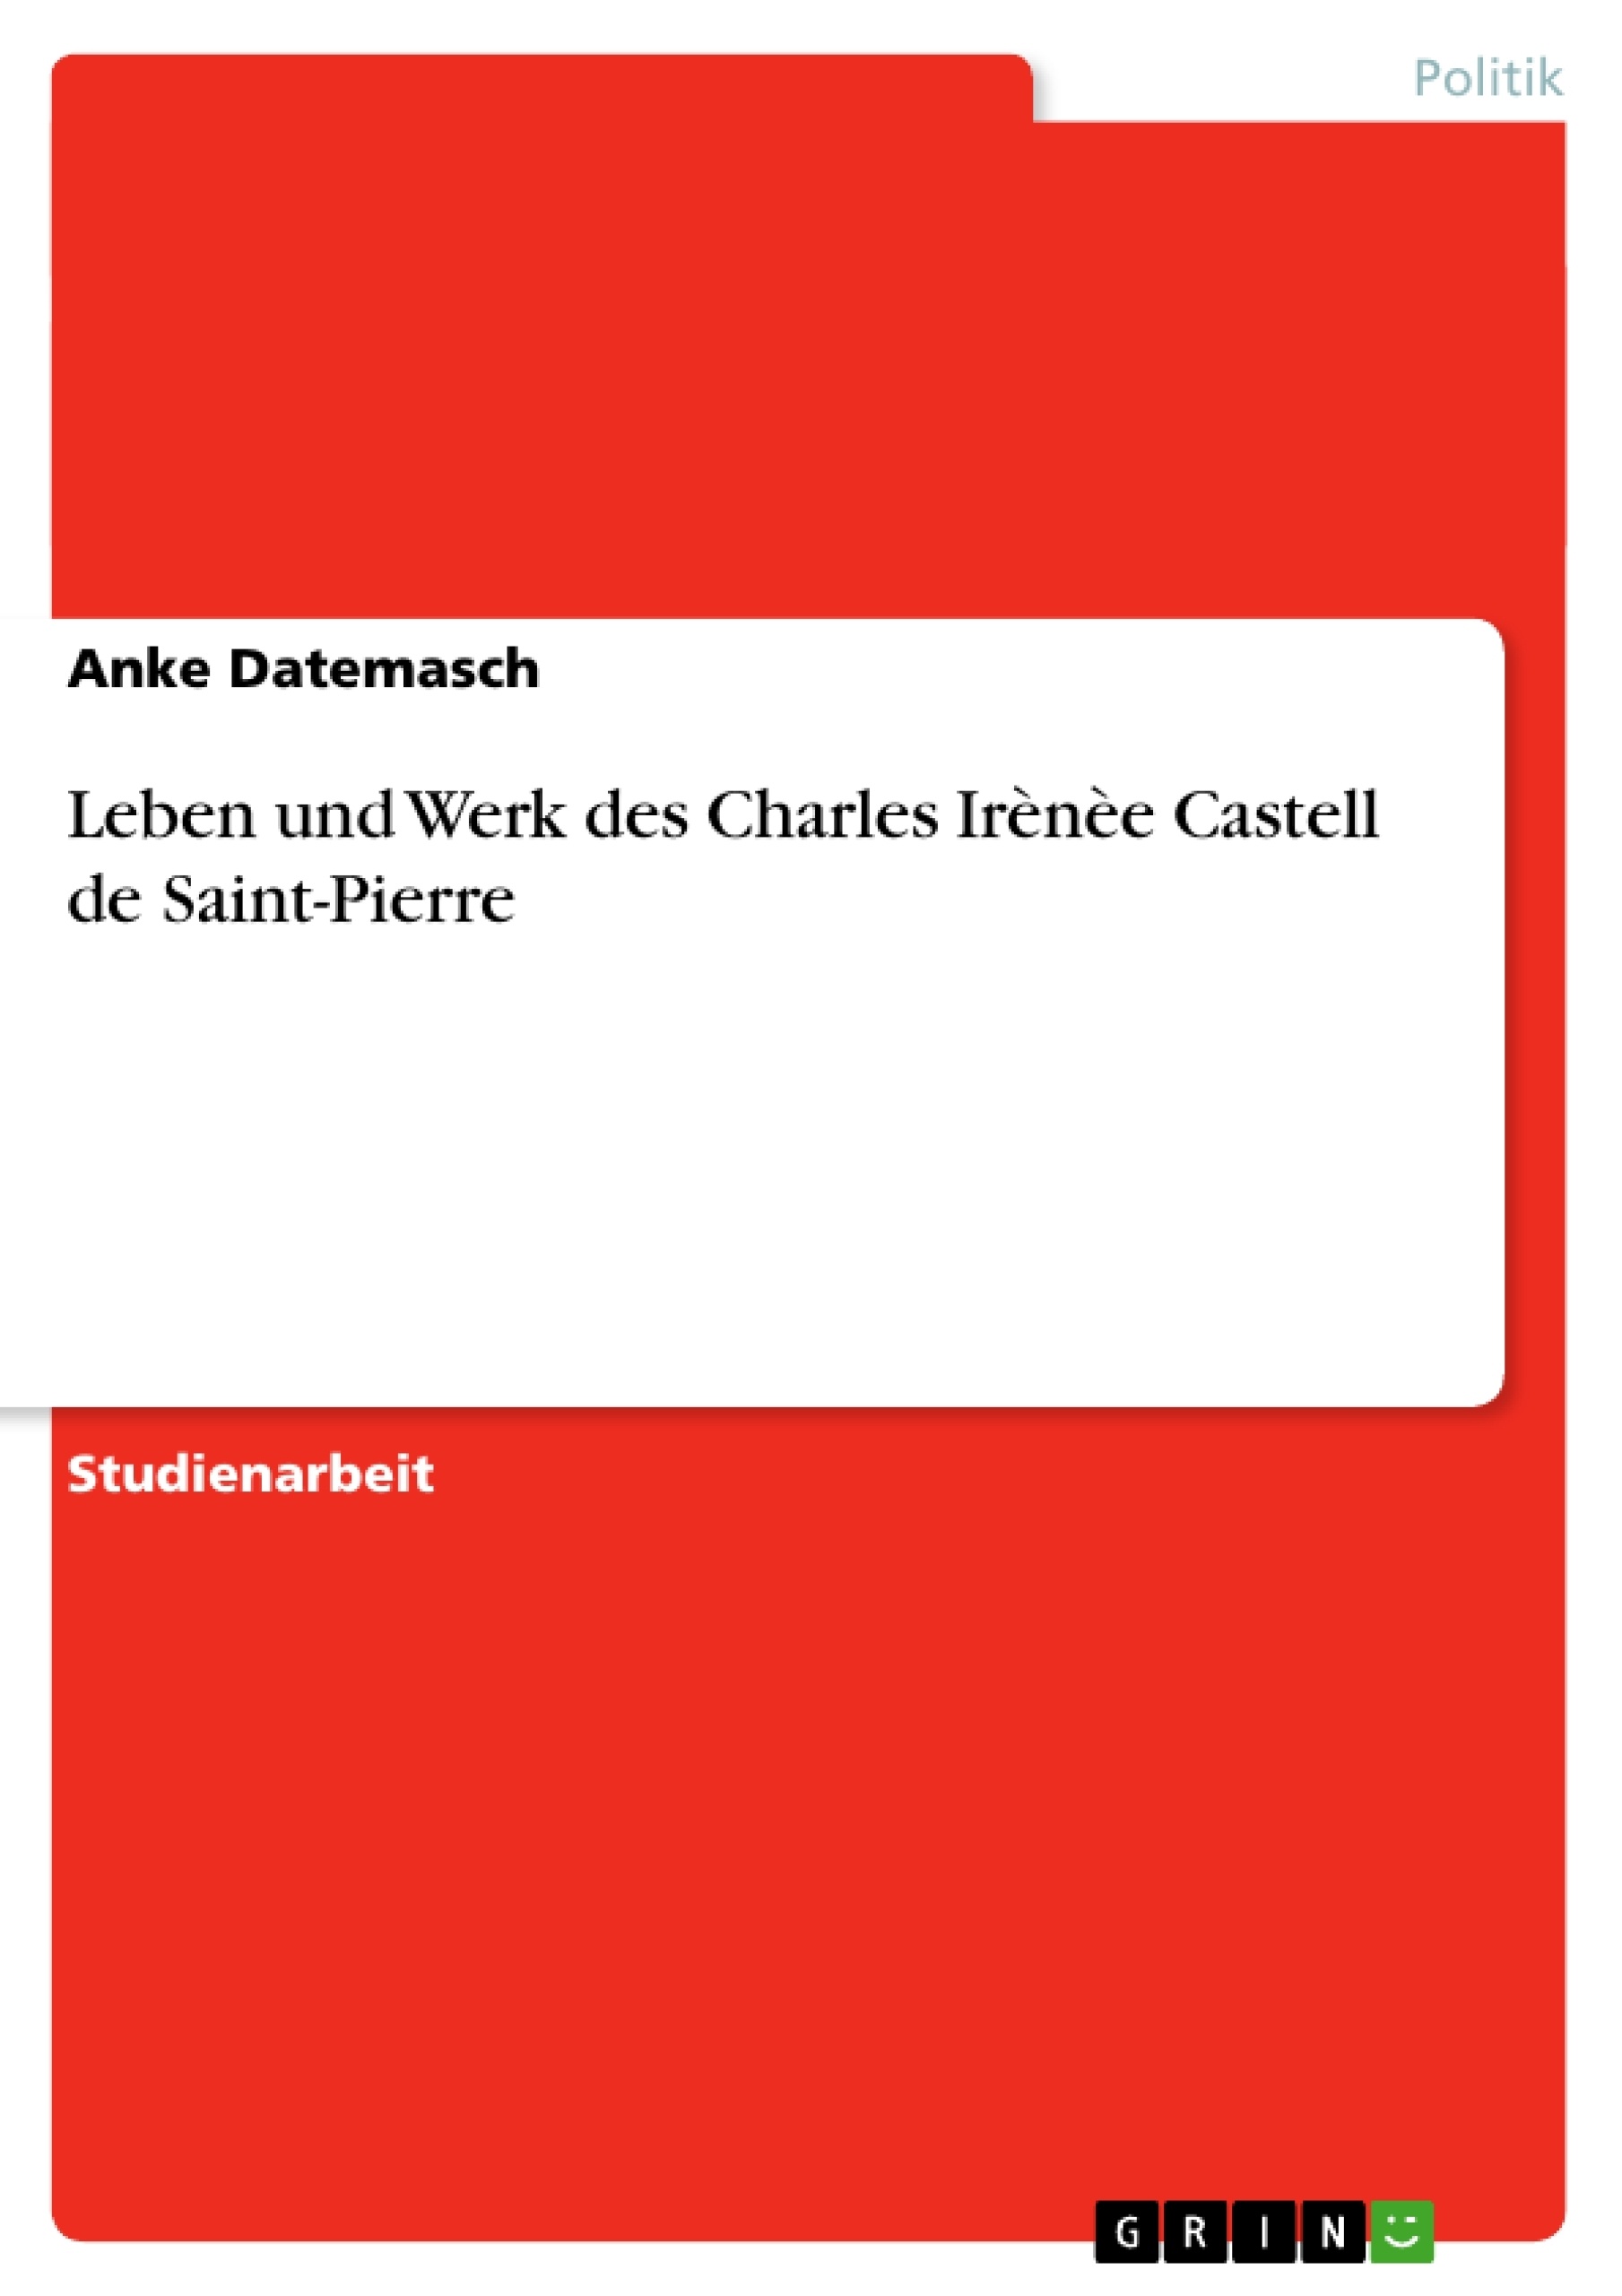 Titel: Leben und Werk des Charles Irènèe Castell de Saint-Pierre